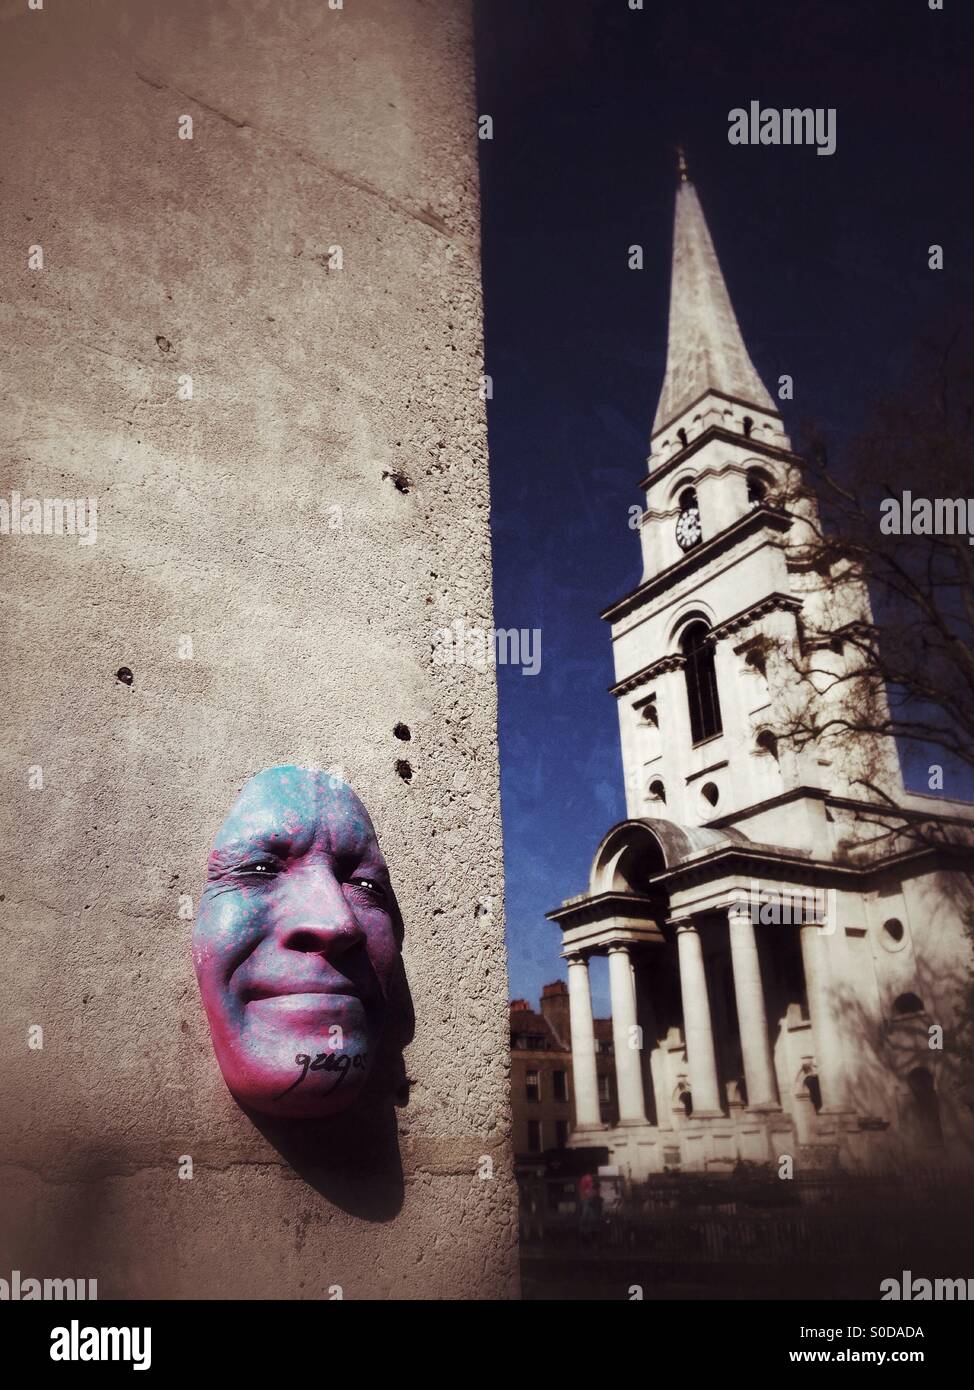 Face sculpture de l'artiste de rue française Gregos avec Christ Church Spitalfields en arrière-plan. Spitalfields, Londres. UK. Banque D'Images